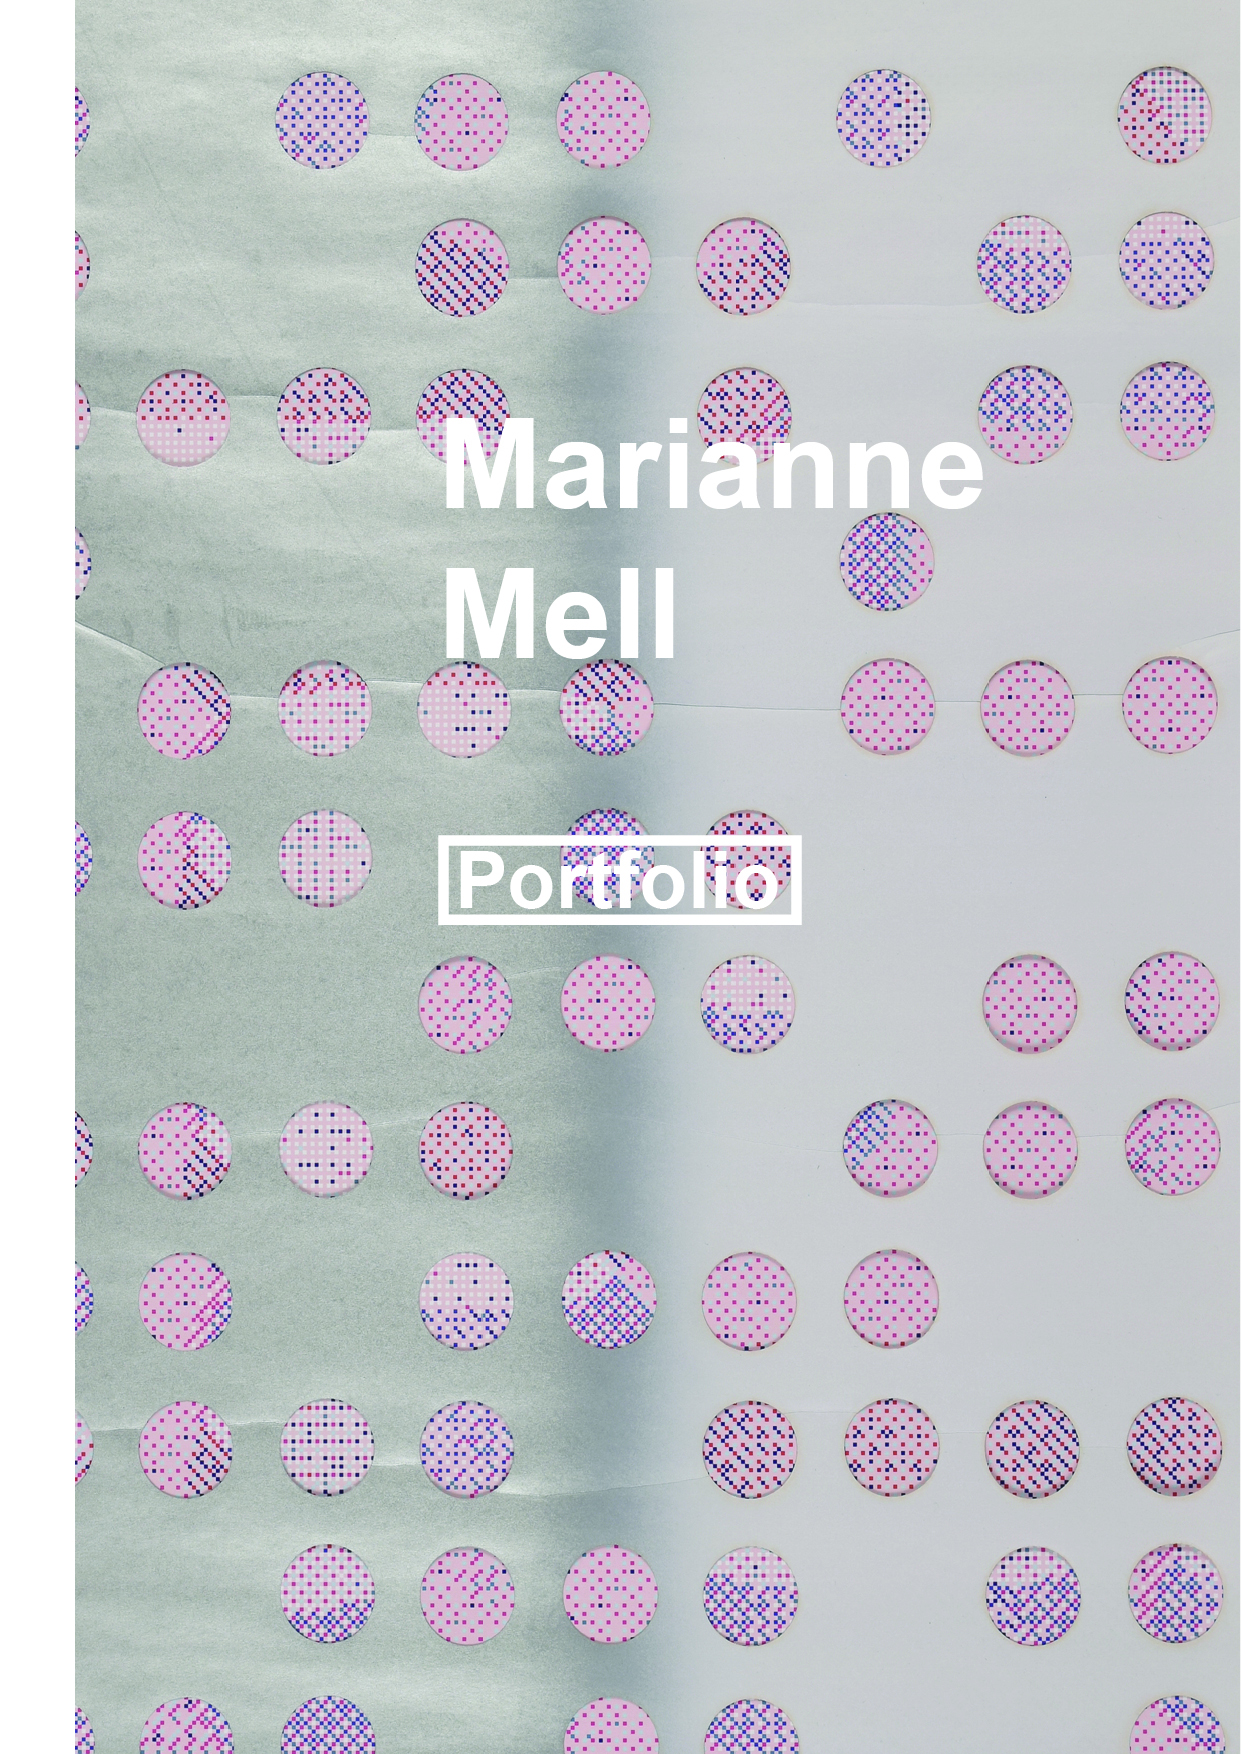 PORTFOLIO MARIANNE MELL